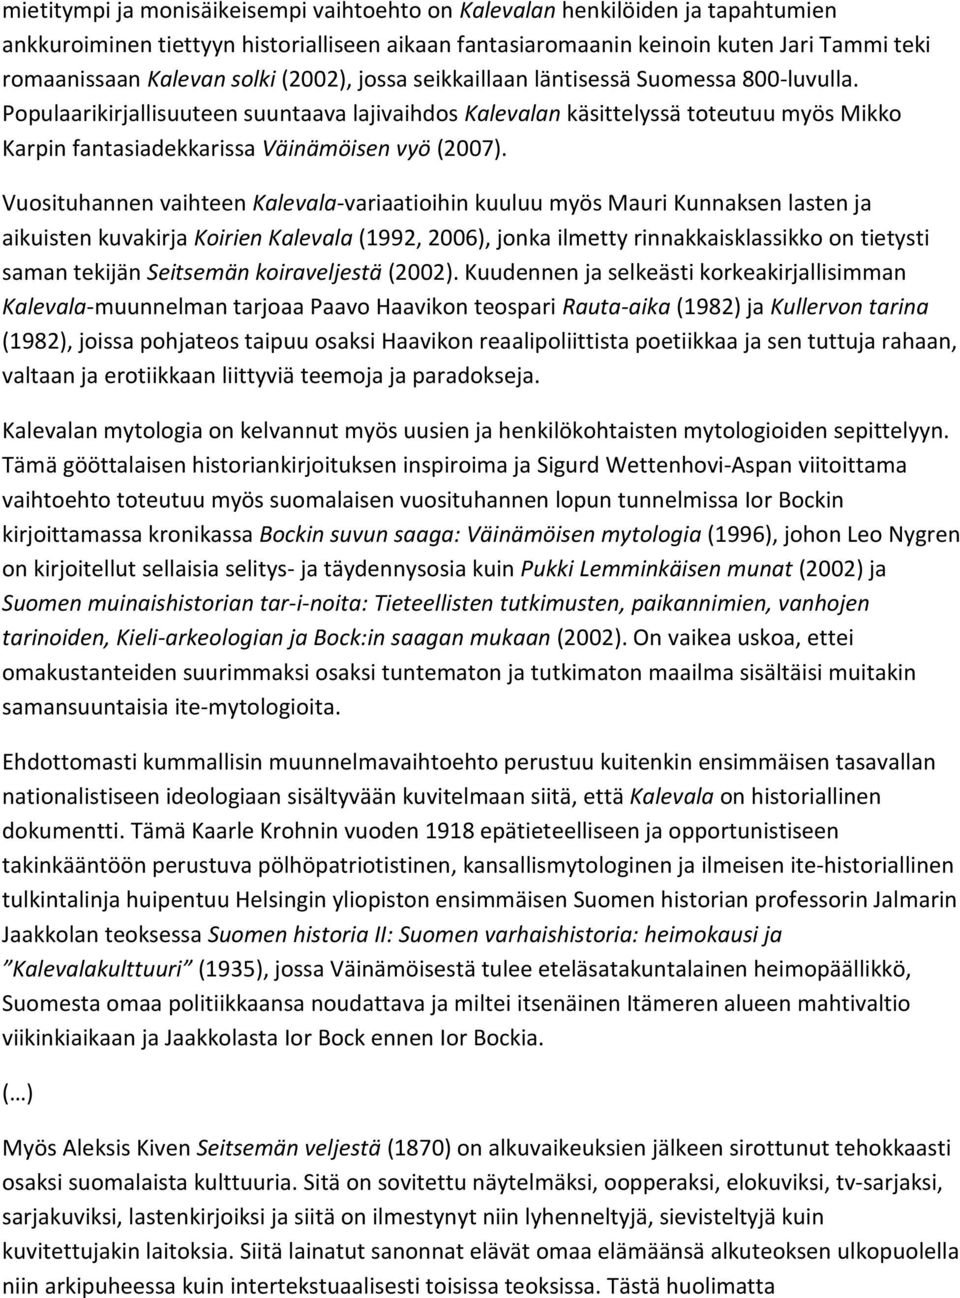 Populaarikirjallisuuteen suuntaava lajivaihdos Kalevalan käsittelyssä toteutuu myös Mikko Karpin fantasiadekkarissa Väinämöisen vyö (2007).